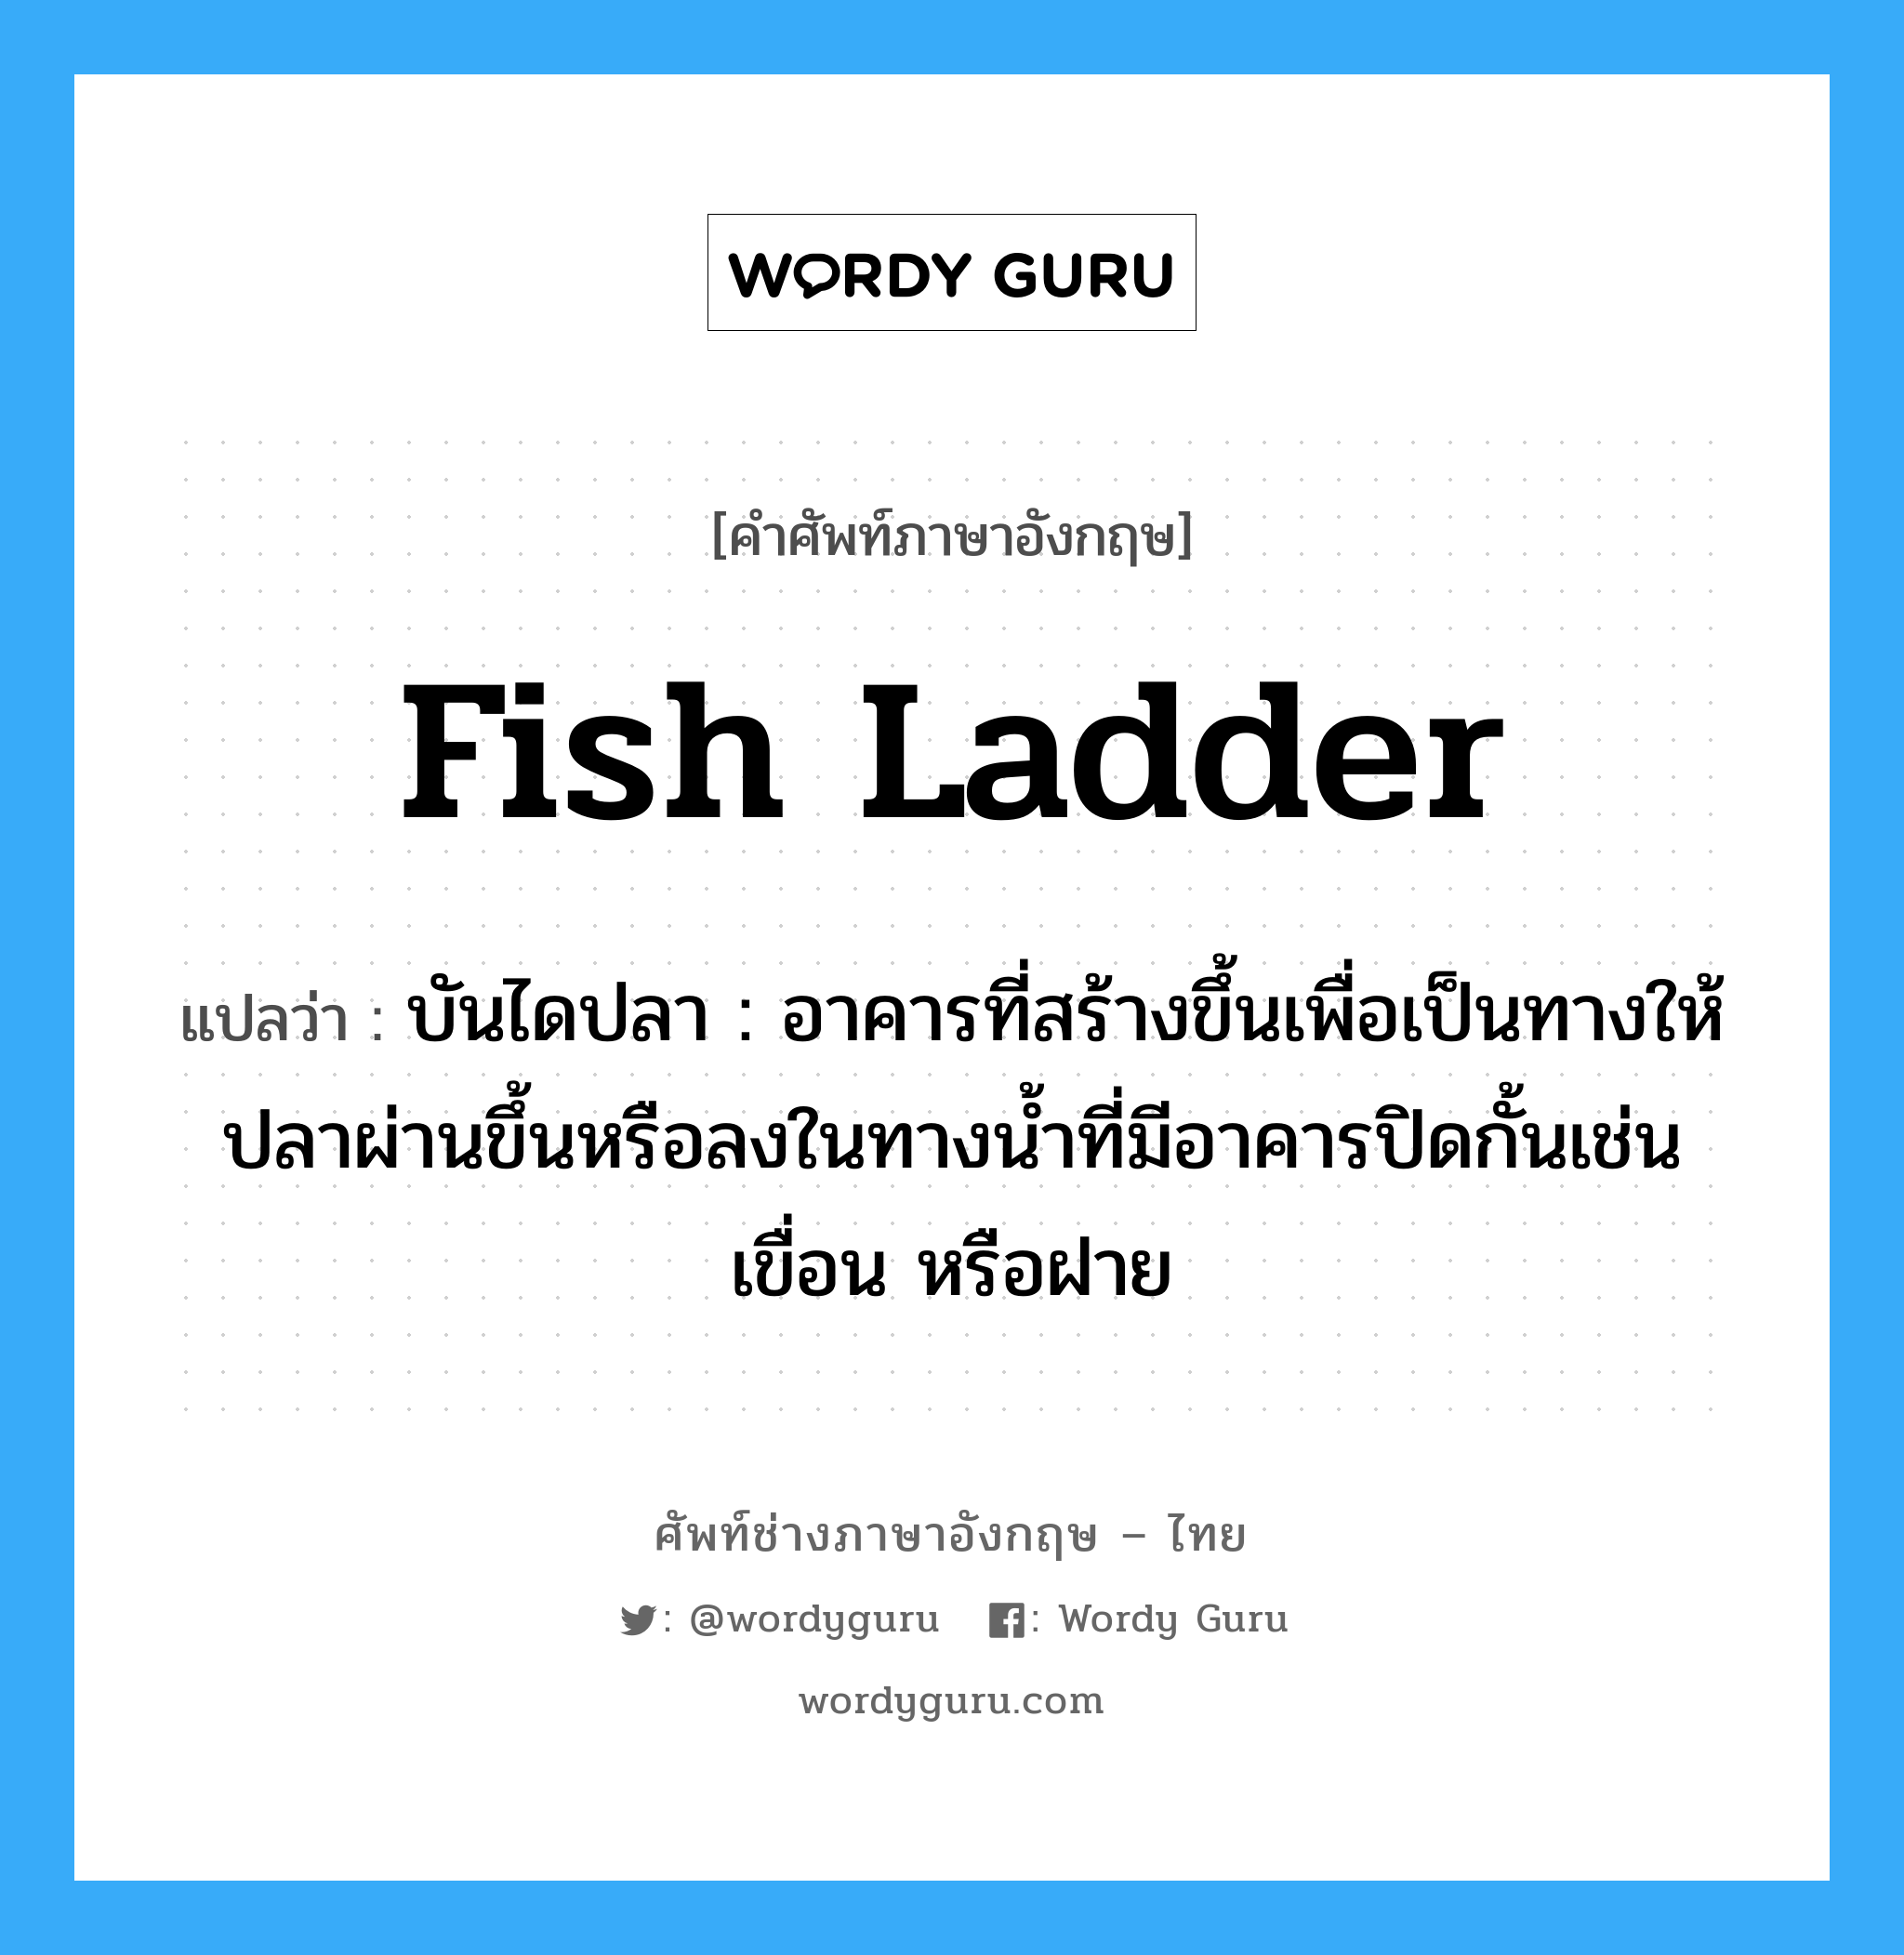 fish ladder แปลว่า?, คำศัพท์ช่างภาษาอังกฤษ - ไทย fish ladder คำศัพท์ภาษาอังกฤษ fish ladder แปลว่า บันไดปลา : อาคารที่สร้างขึ้นเพื่อเป็นทางให้ปลาผ่านขึ้นหรือลงในทางน้ำที่มีอาคารปิดกั้นเช่น เขื่อน หรือฝาย